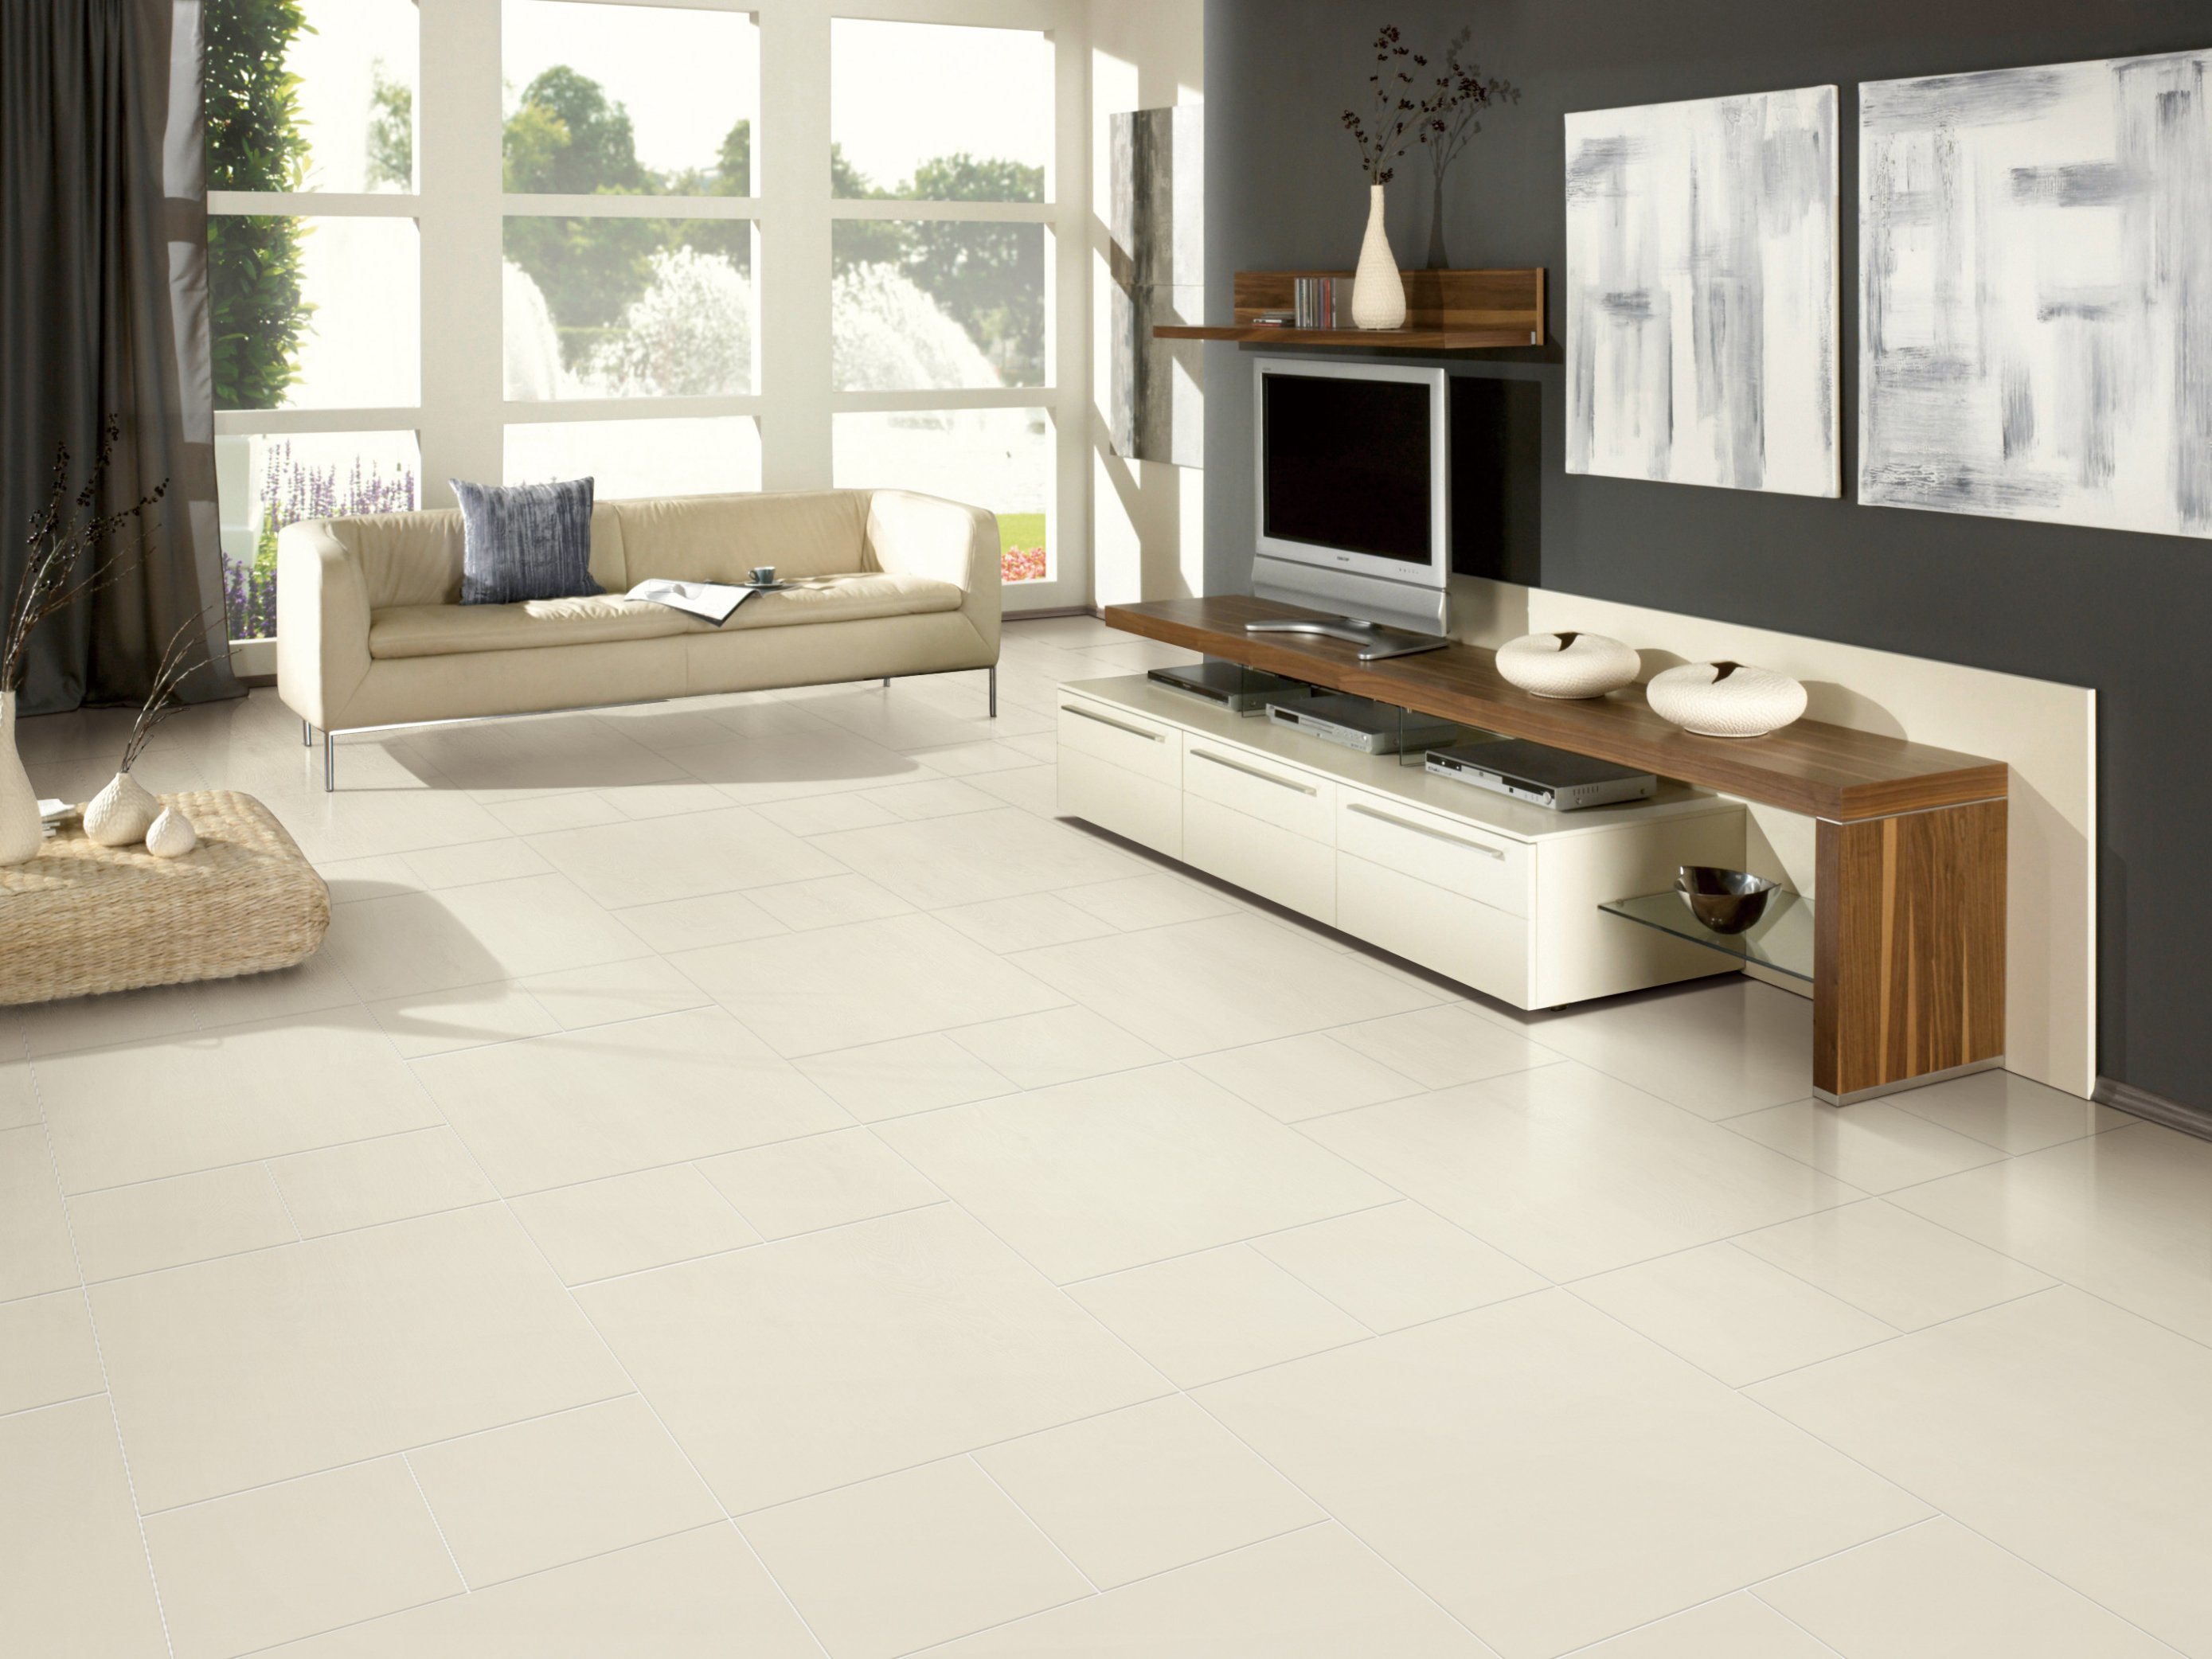 White tiles | Budget Flooring, Inc.